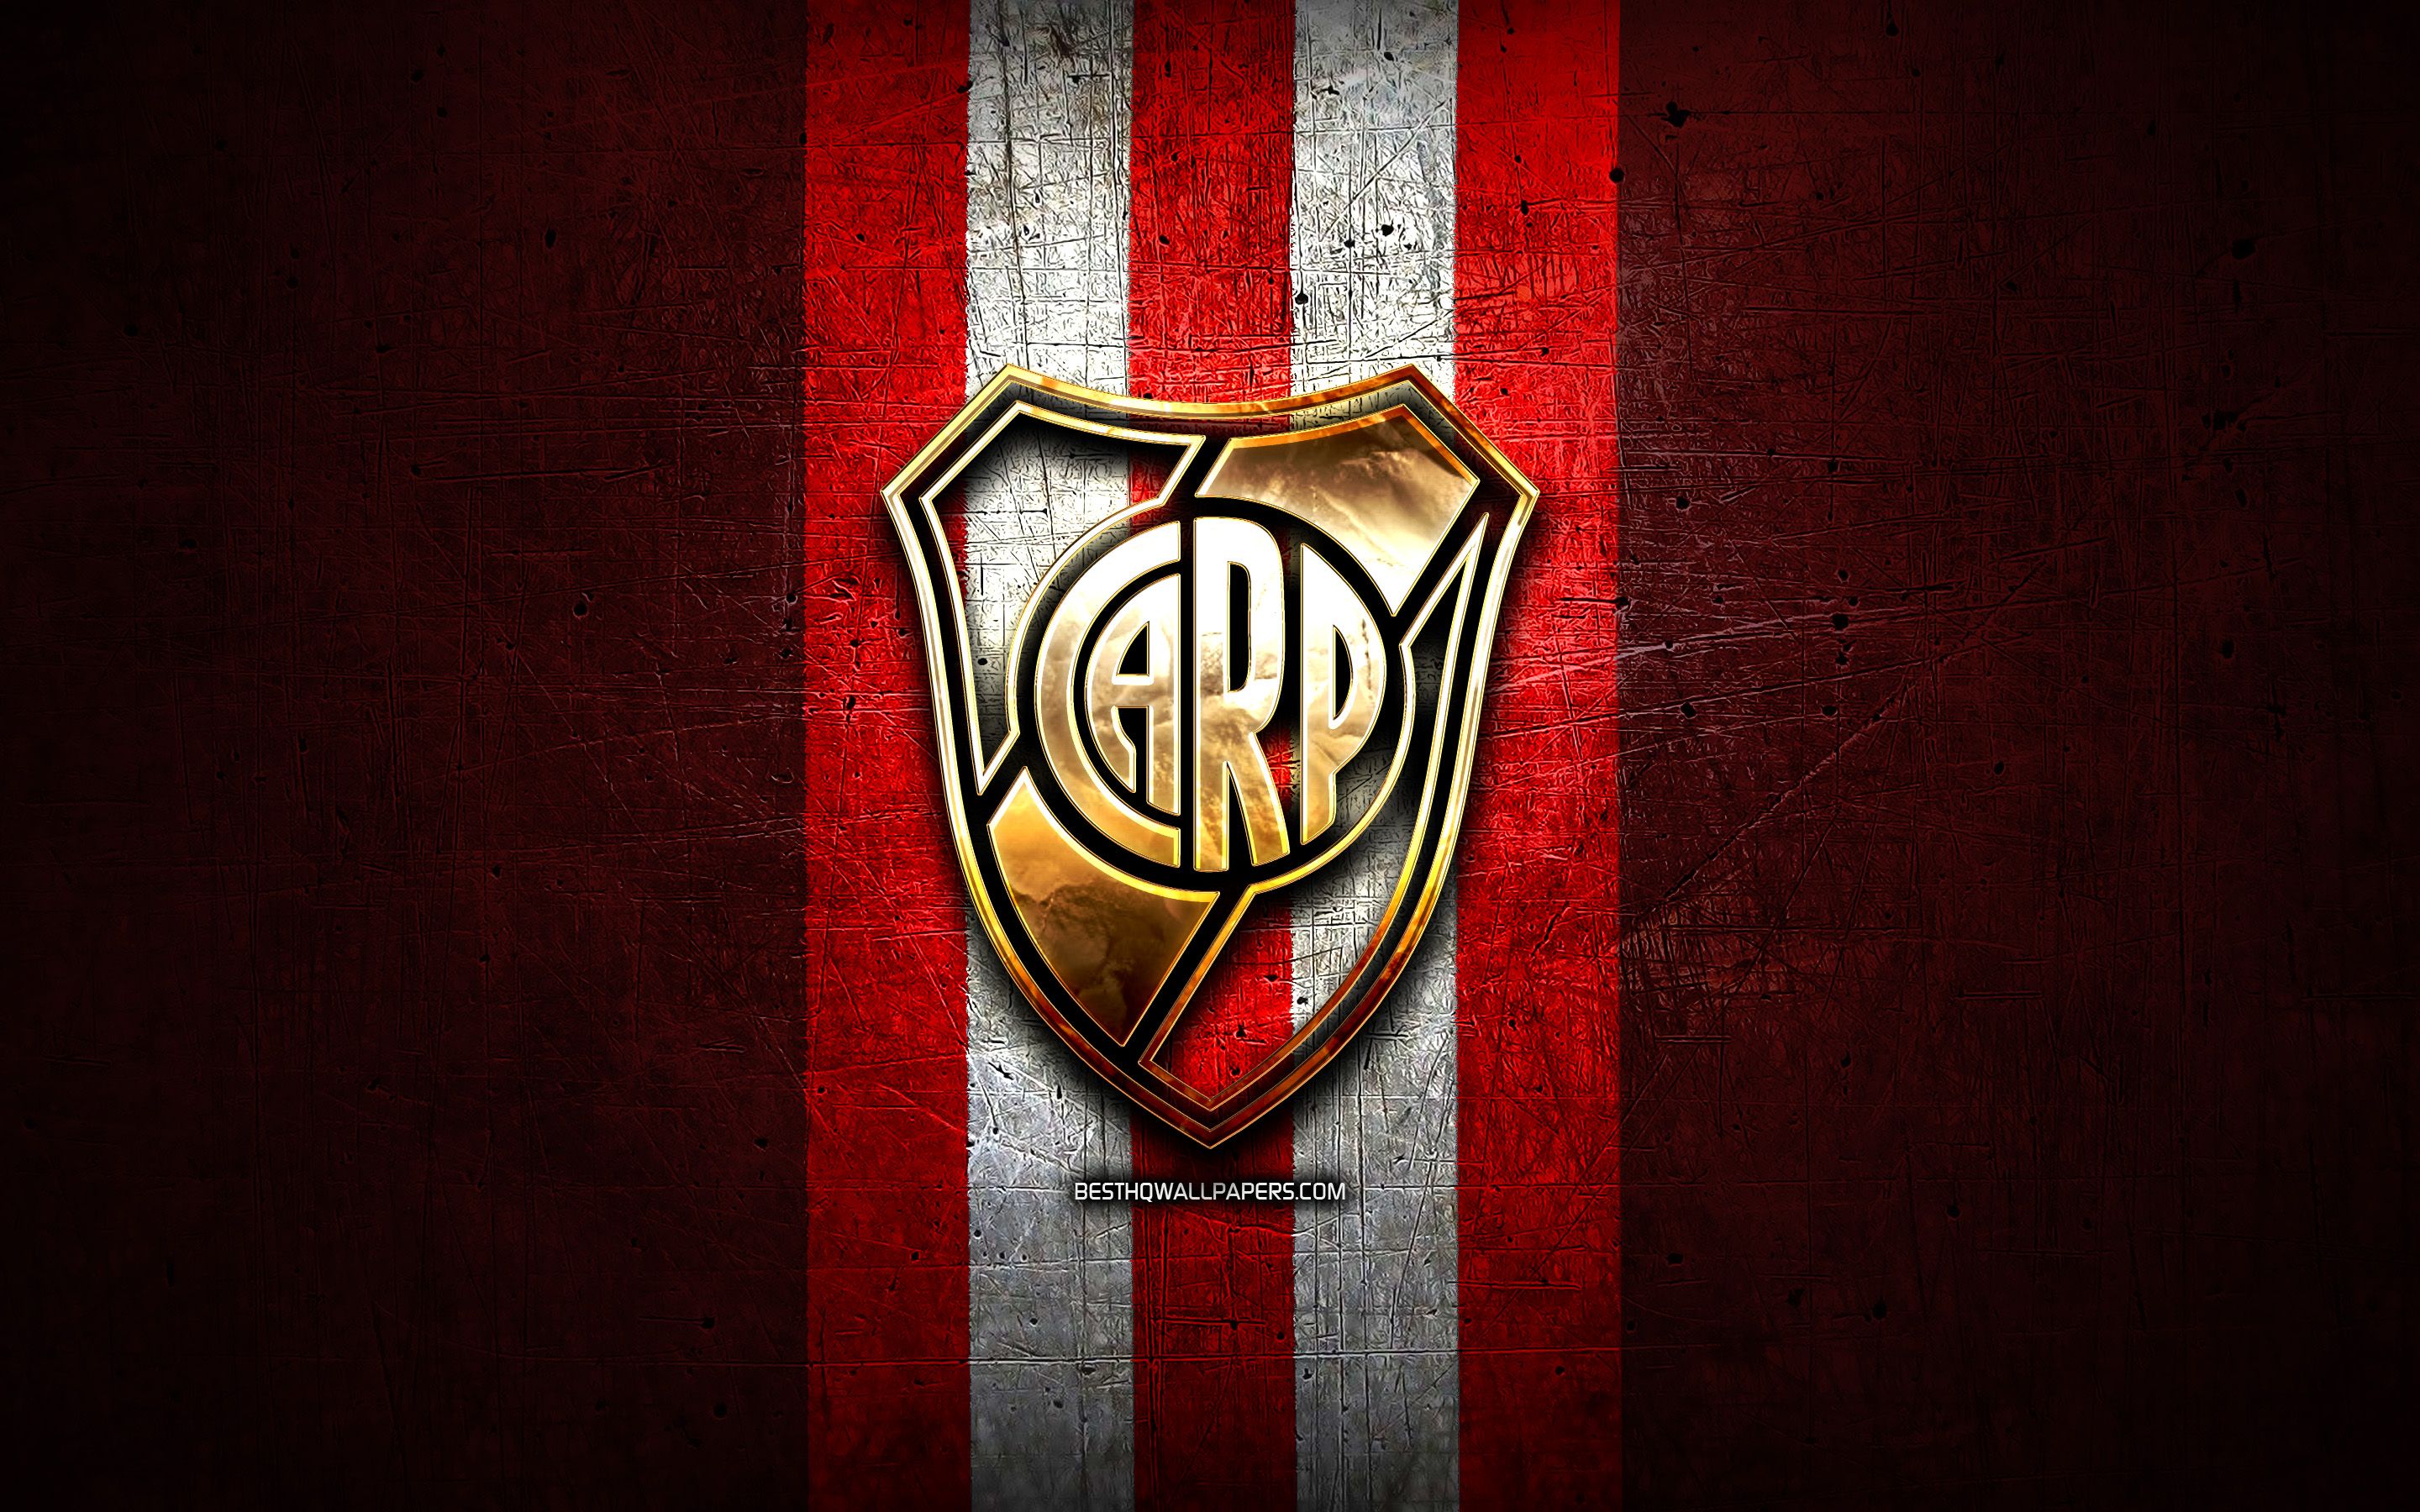 Fondos de pantalla del River Plate - FondosMil